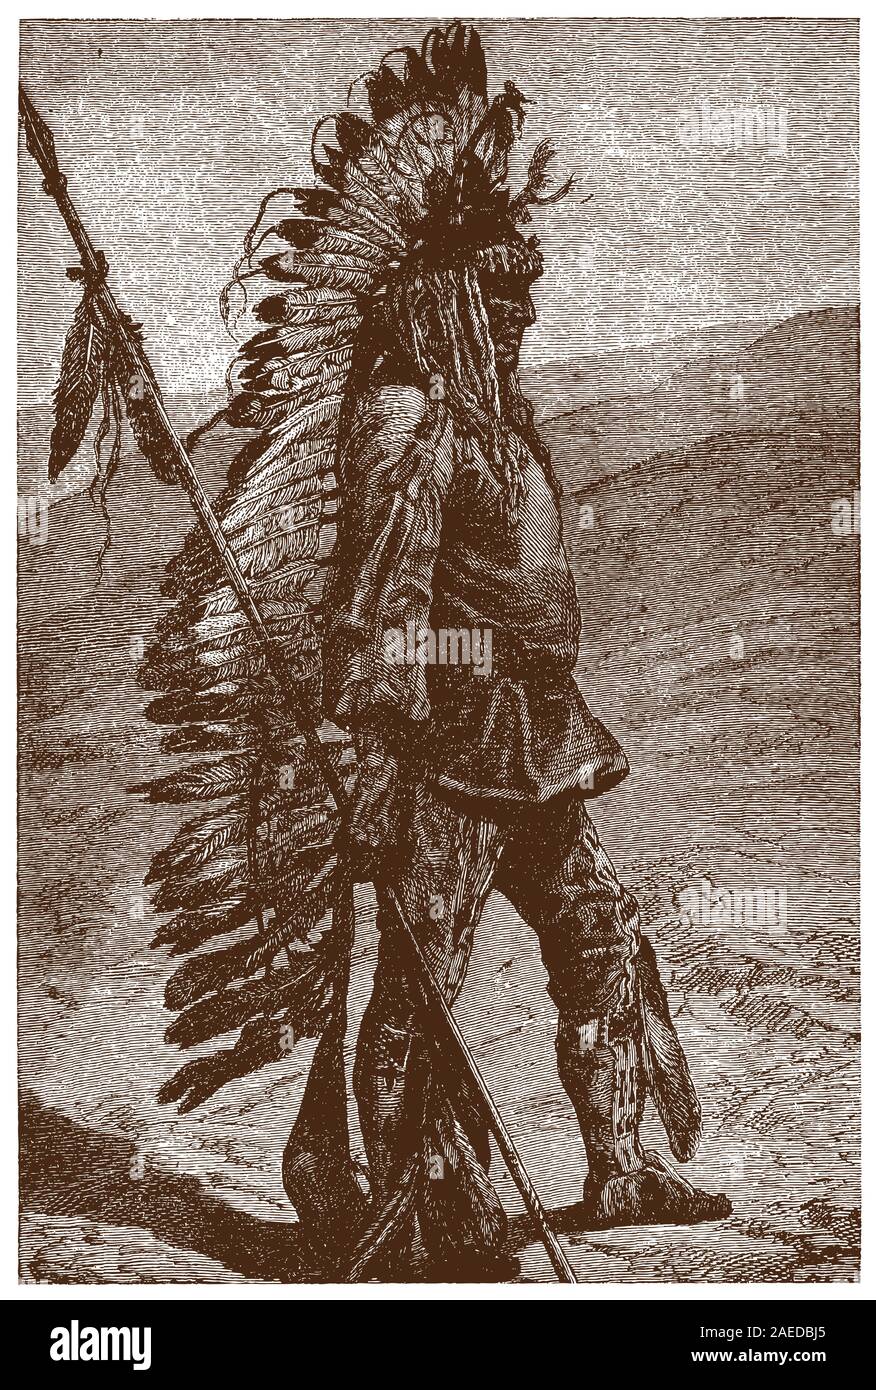 Historische pawnee Chief stehend in einer Landschaft und trug eine Federhaube und halten einen Speer. Abbildung: Nach einem Stich aus dem 19. Jahrhundert Stock Vektor